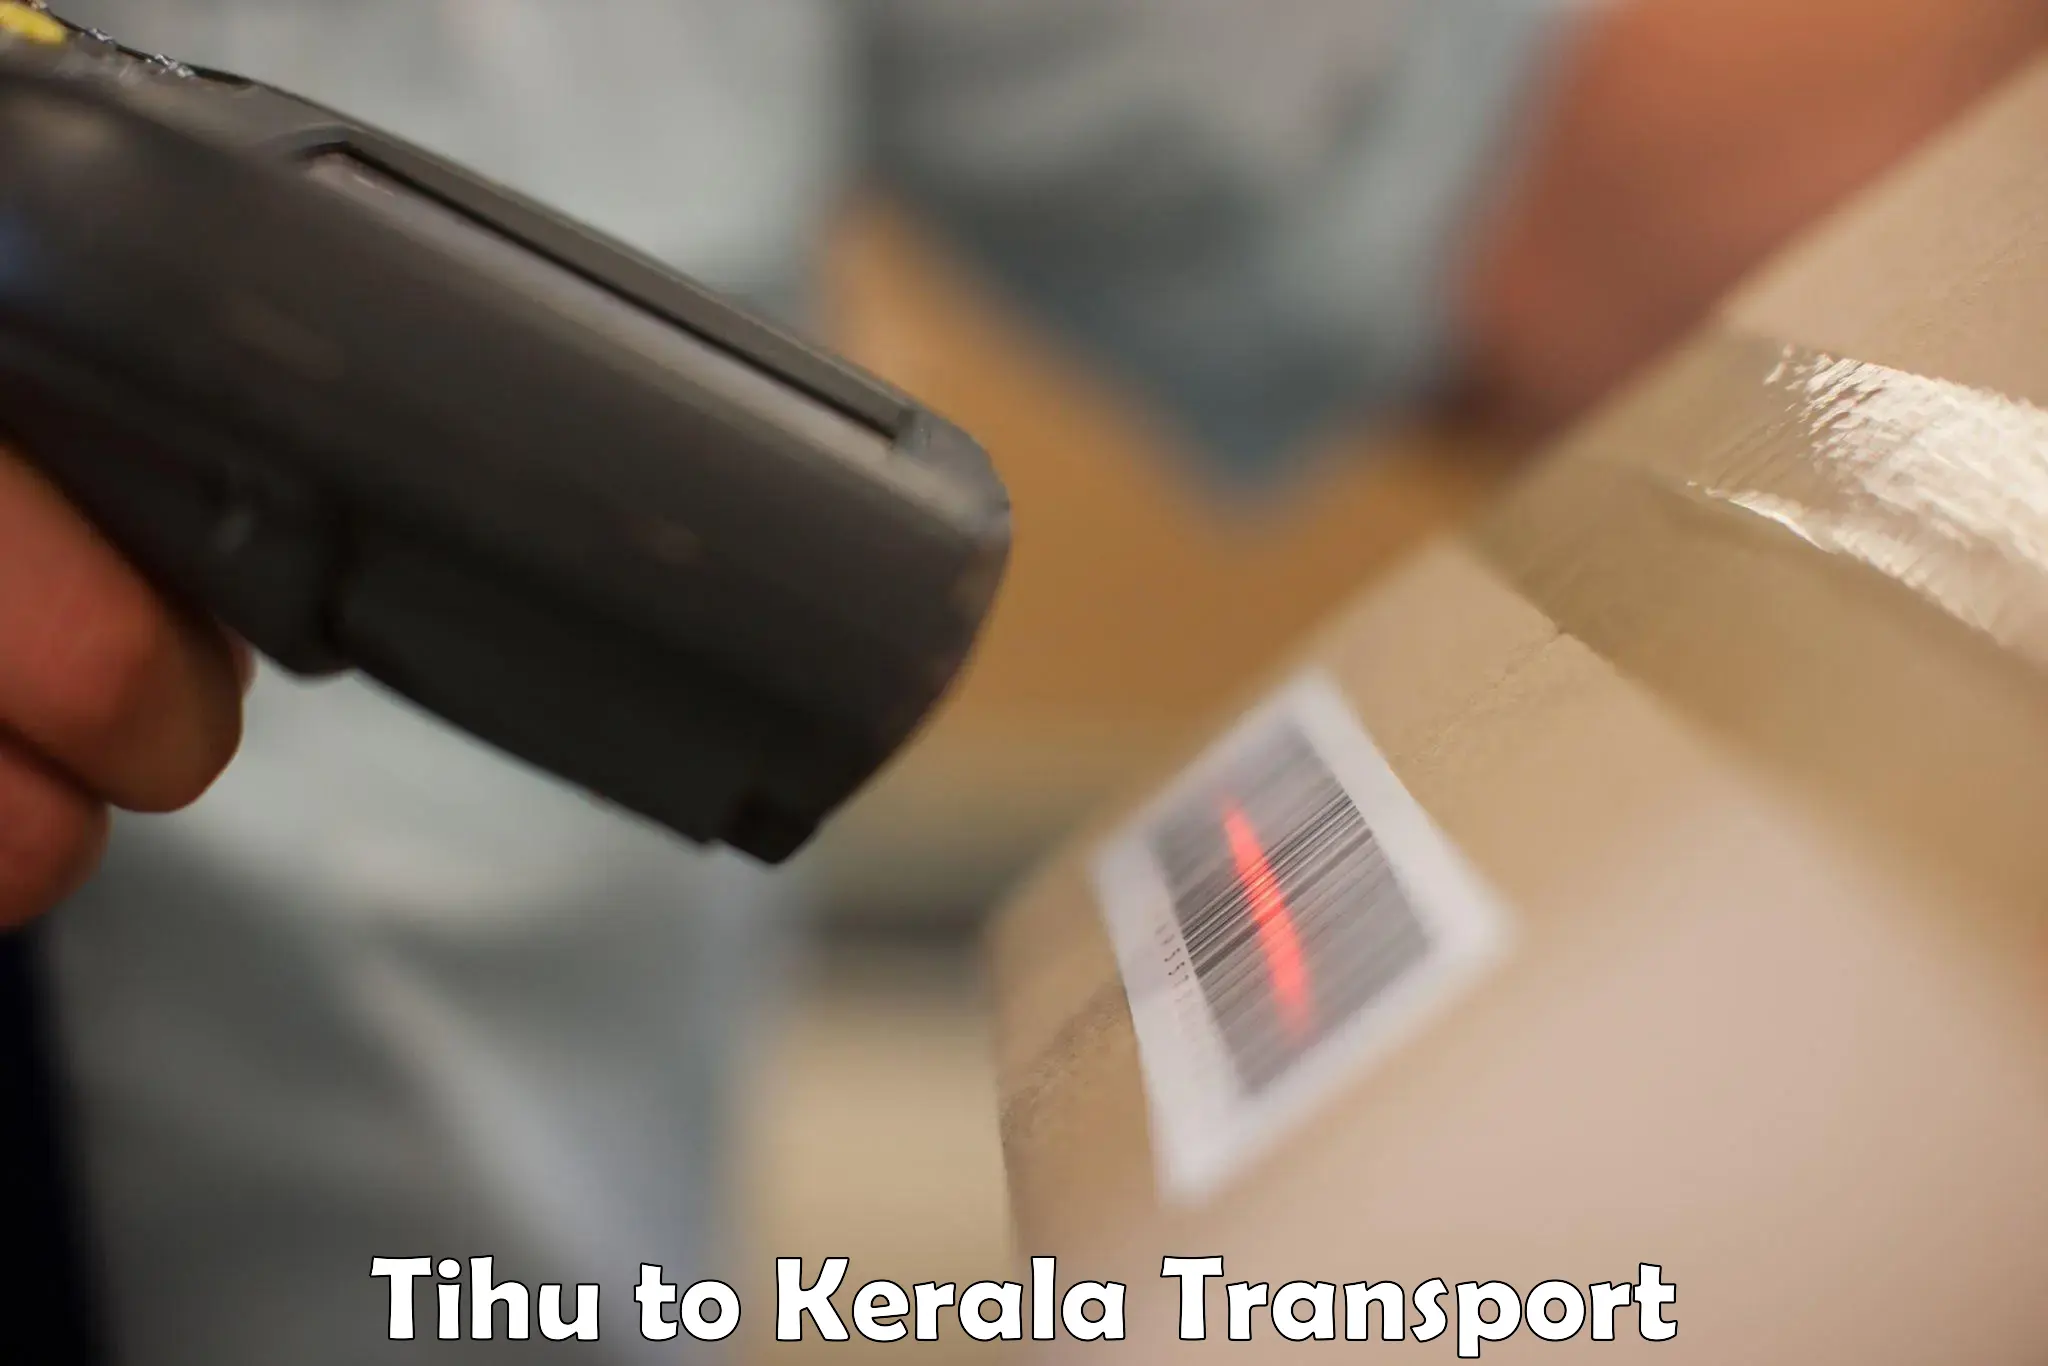 Cycle transportation service Tihu to Kochi